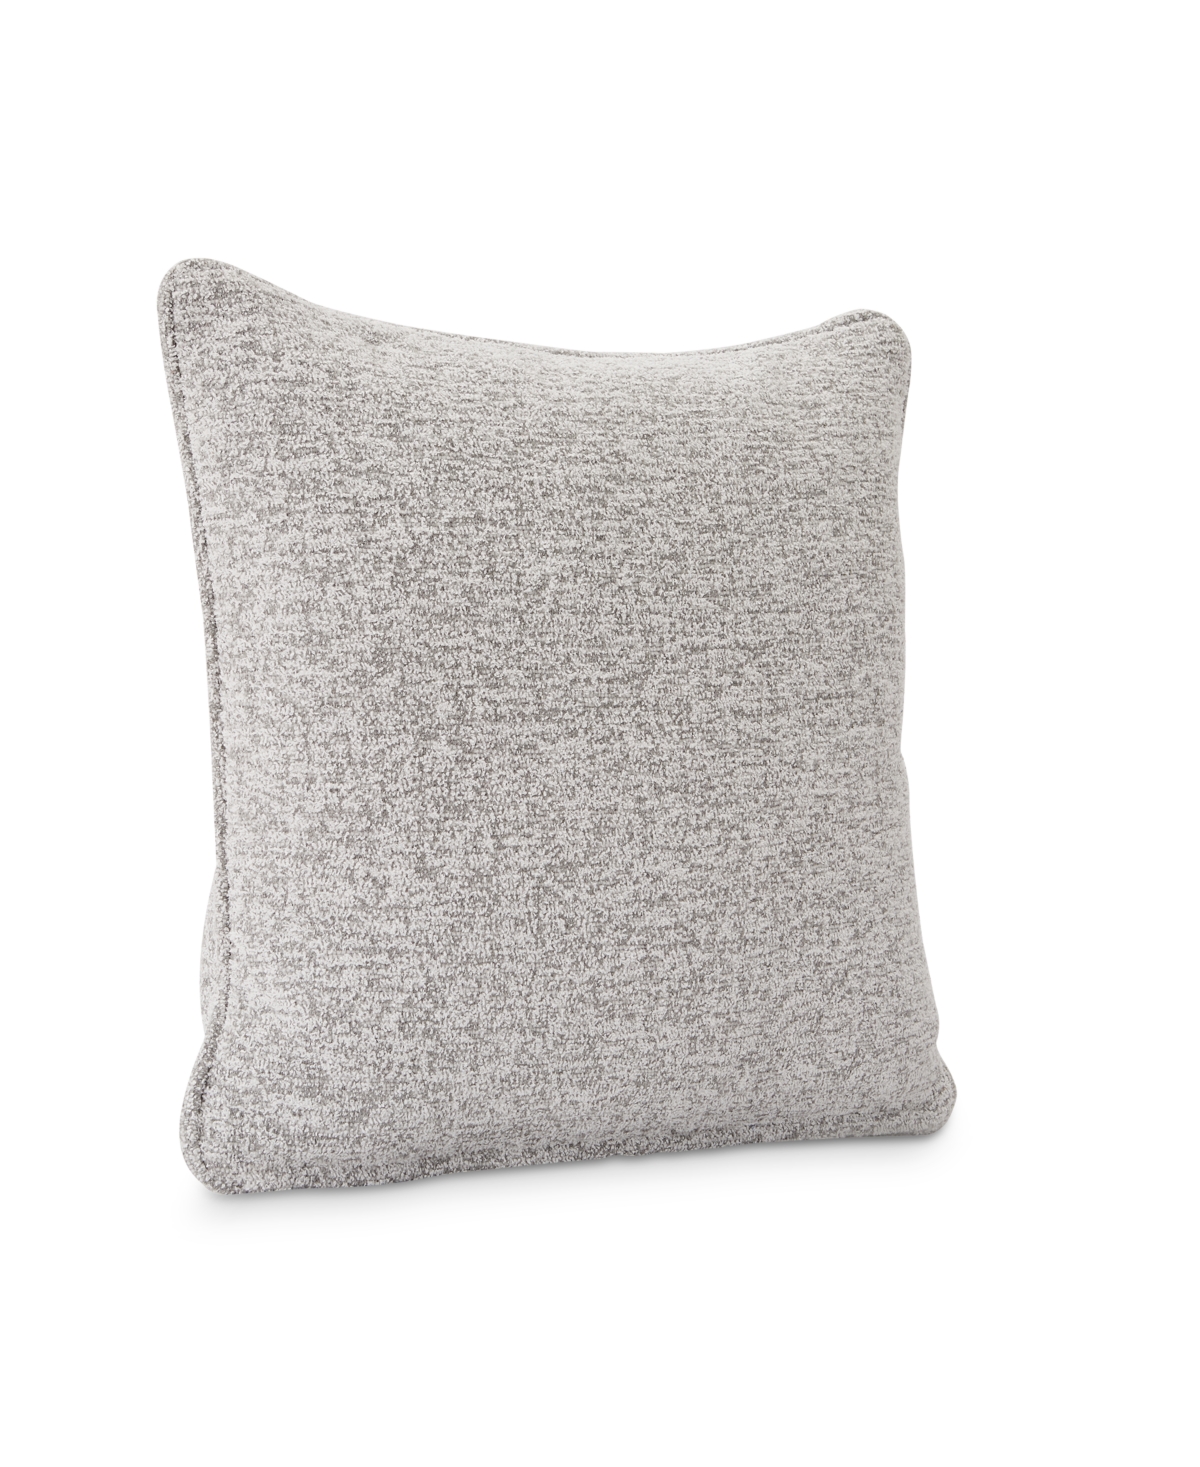 Bernhardt Capri Sofas 22 Accent Pillow in Sunbrella Fabric